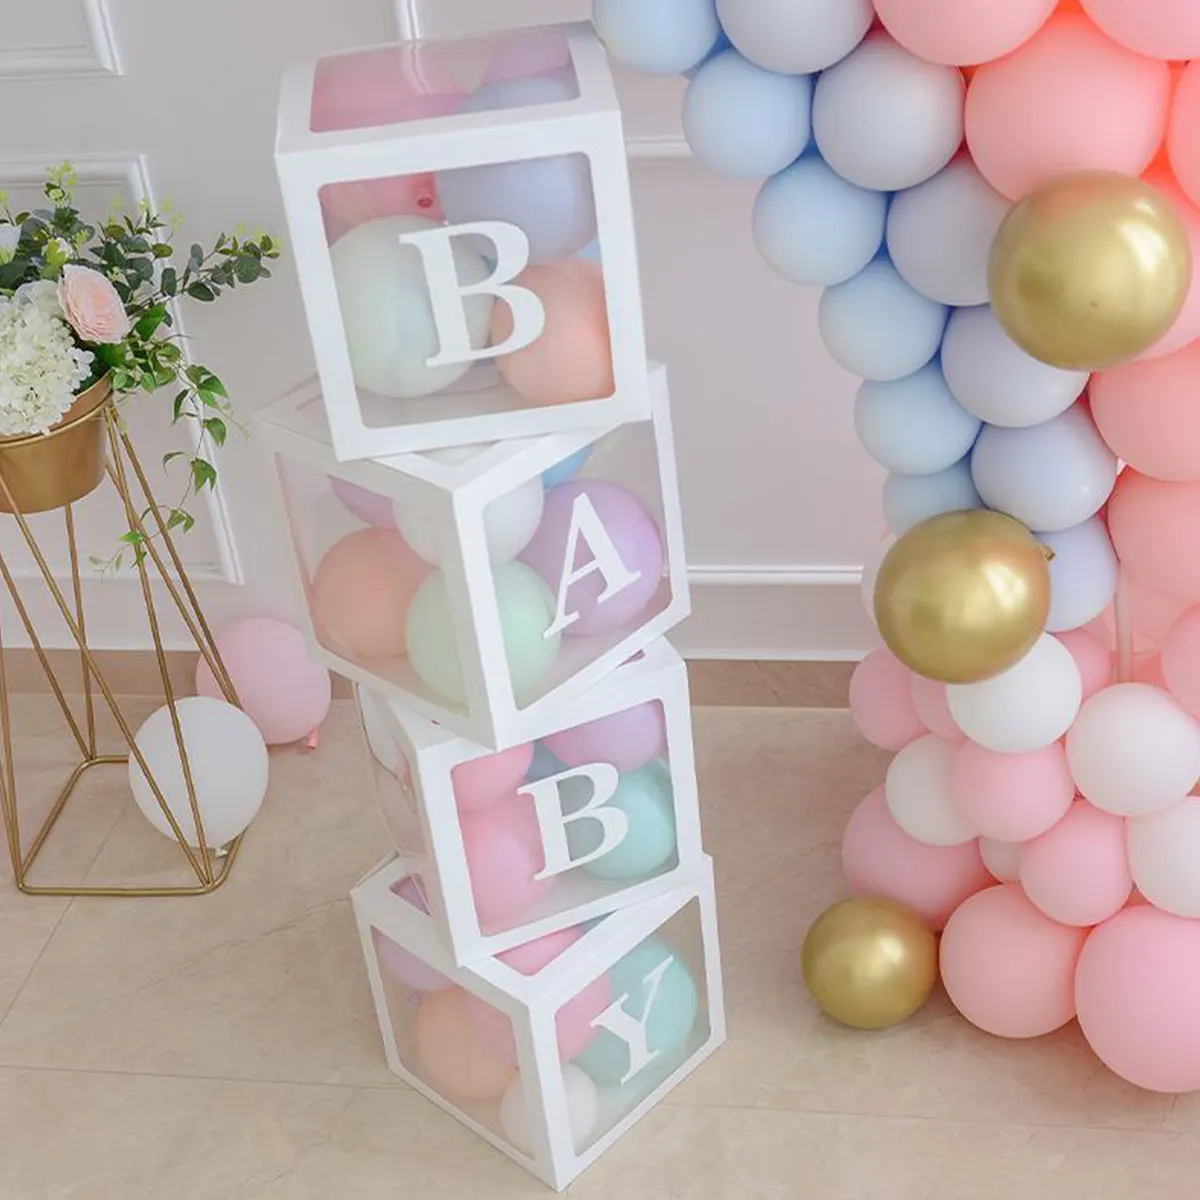 4 adet beyaz bebek duş kutusu şeffaf balon seti hediye hediyeler mektup çocuk kutusu bebek duş süslemeleri doğum günü partisi malzemeleri